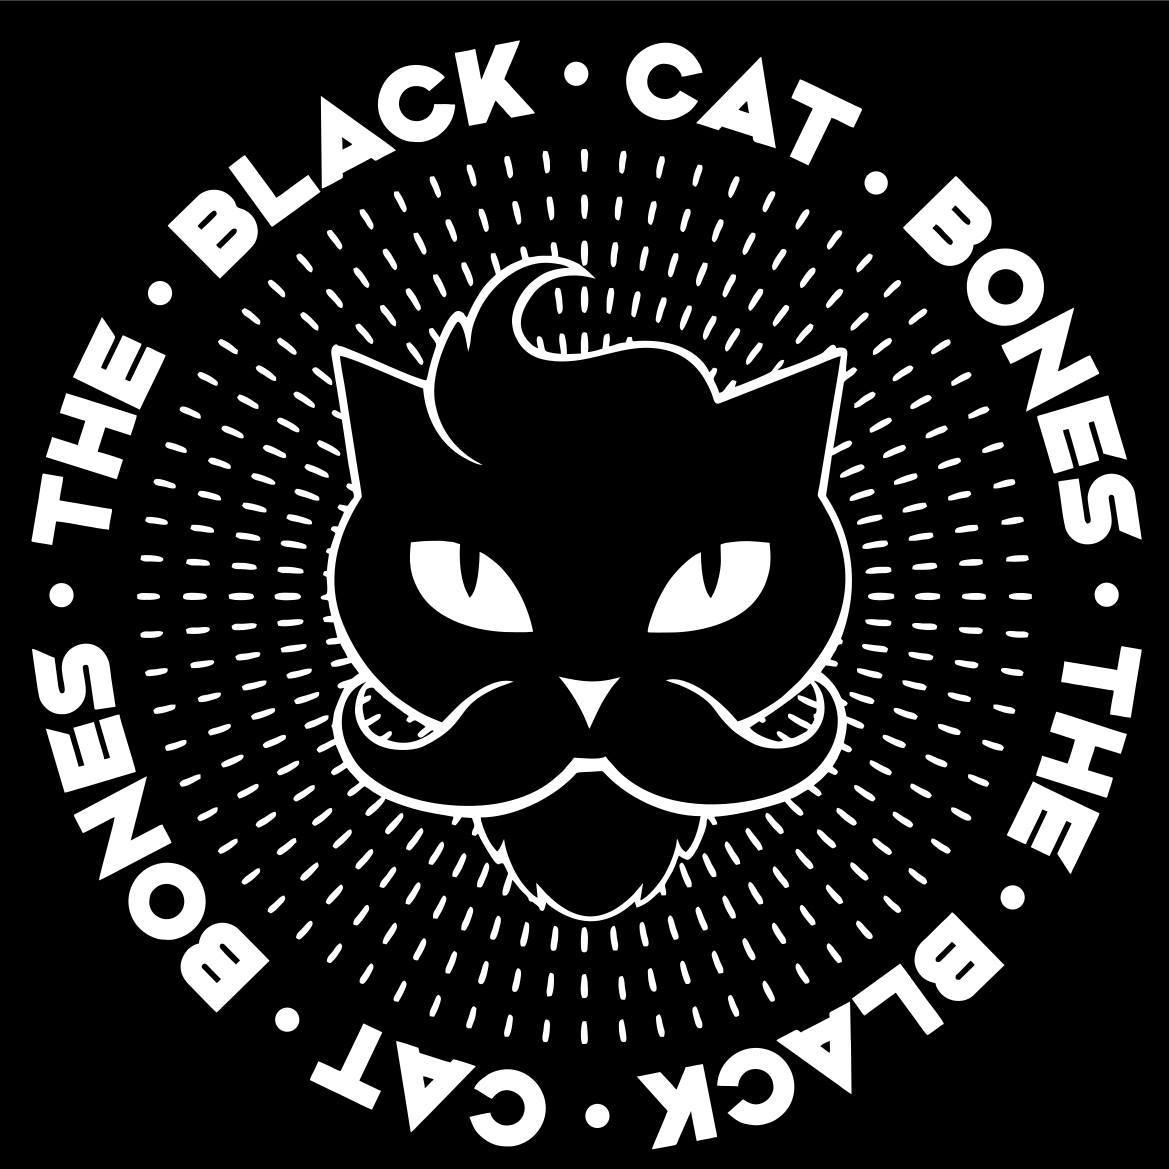 The Black Cat Bones